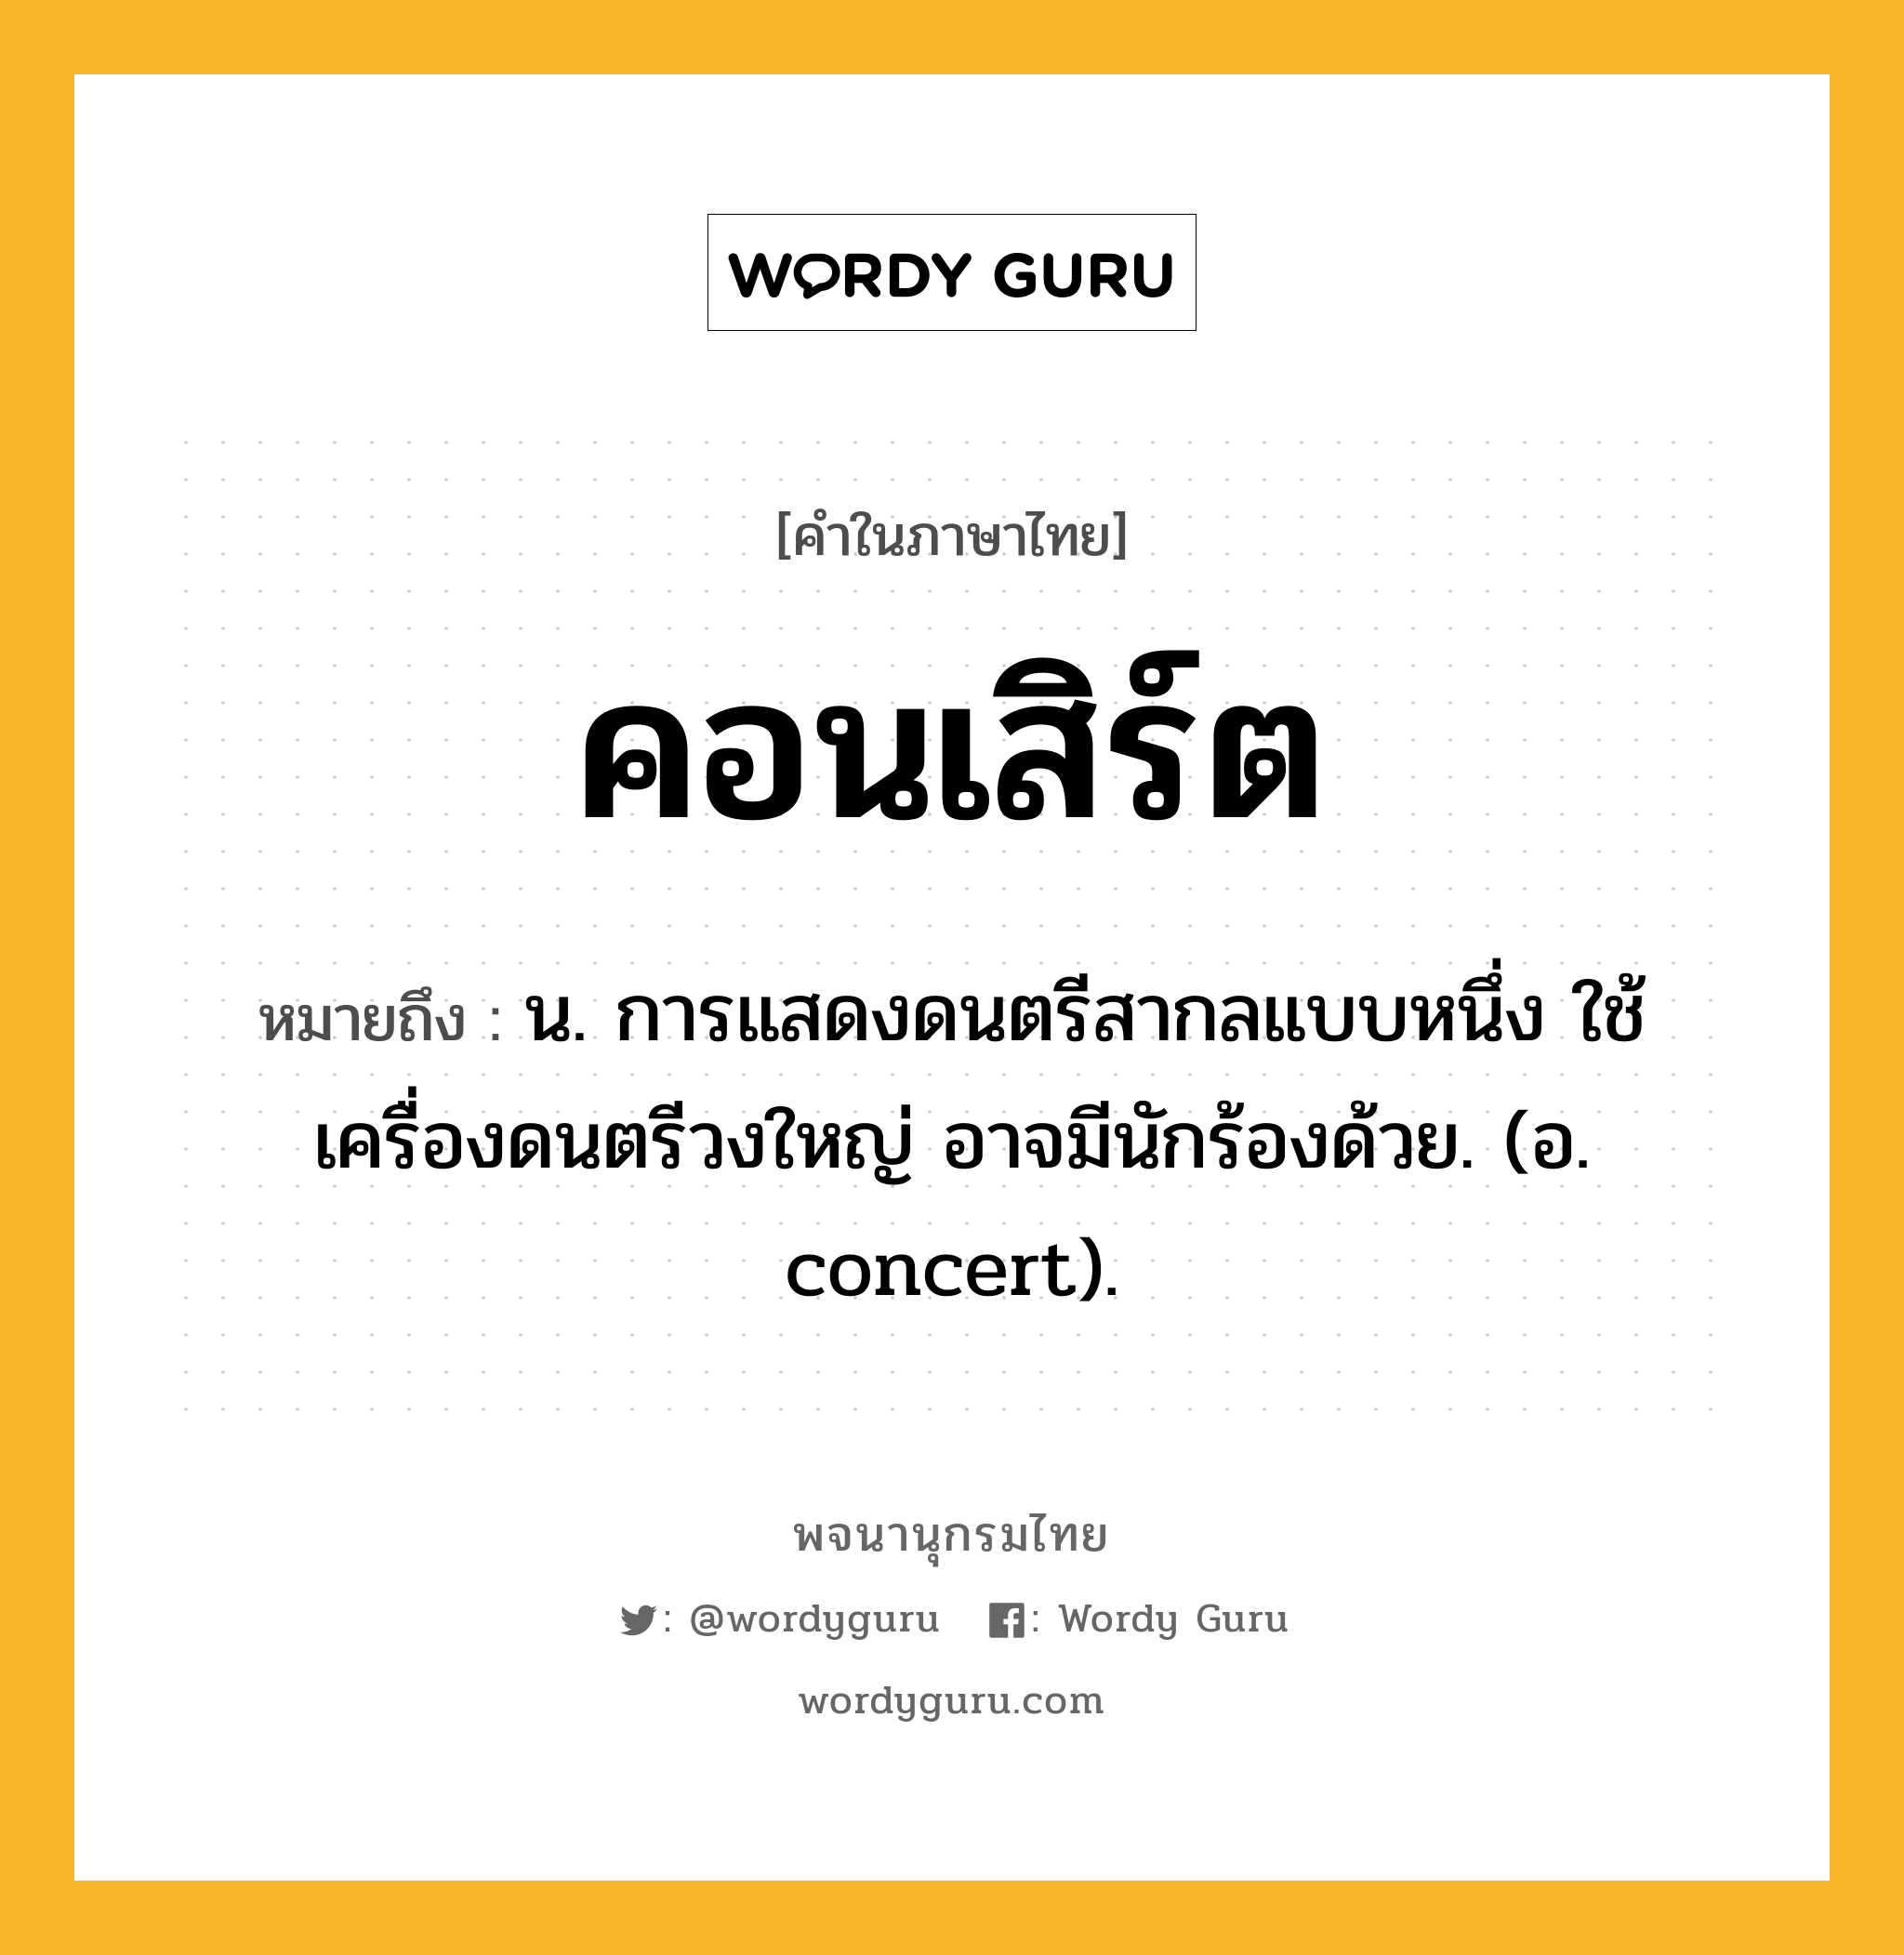 คอนเสิร์ต หมายถึงอะไร?, คำในภาษาไทย คอนเสิร์ต หมายถึง น. การแสดงดนตรีสากลแบบหนึ่ง ใช้เครื่องดนตรีวงใหญ่ อาจมีนักร้องด้วย. (อ. concert).